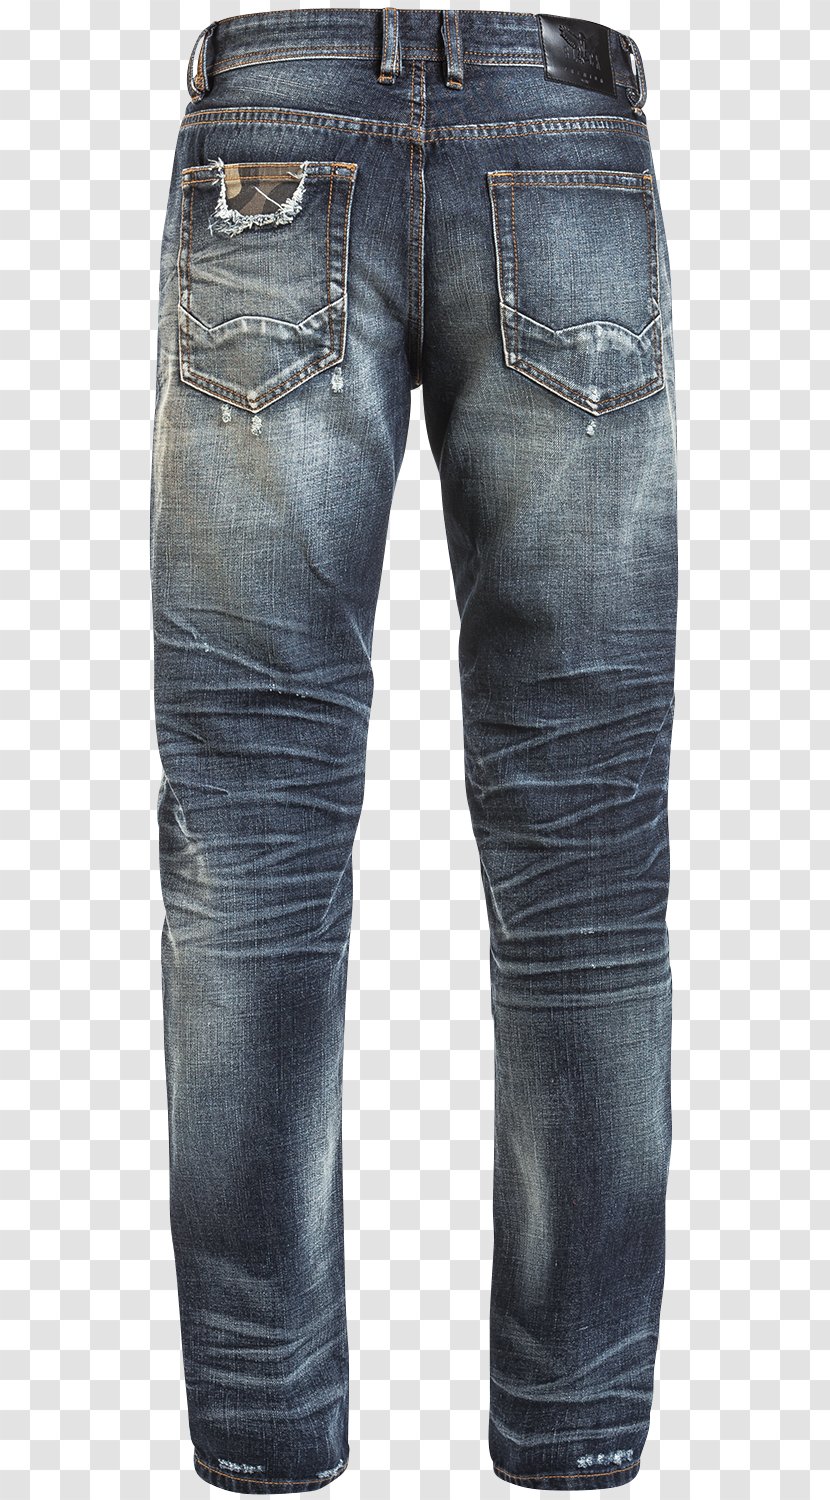 Jeans Denim - Pocket Transparent PNG